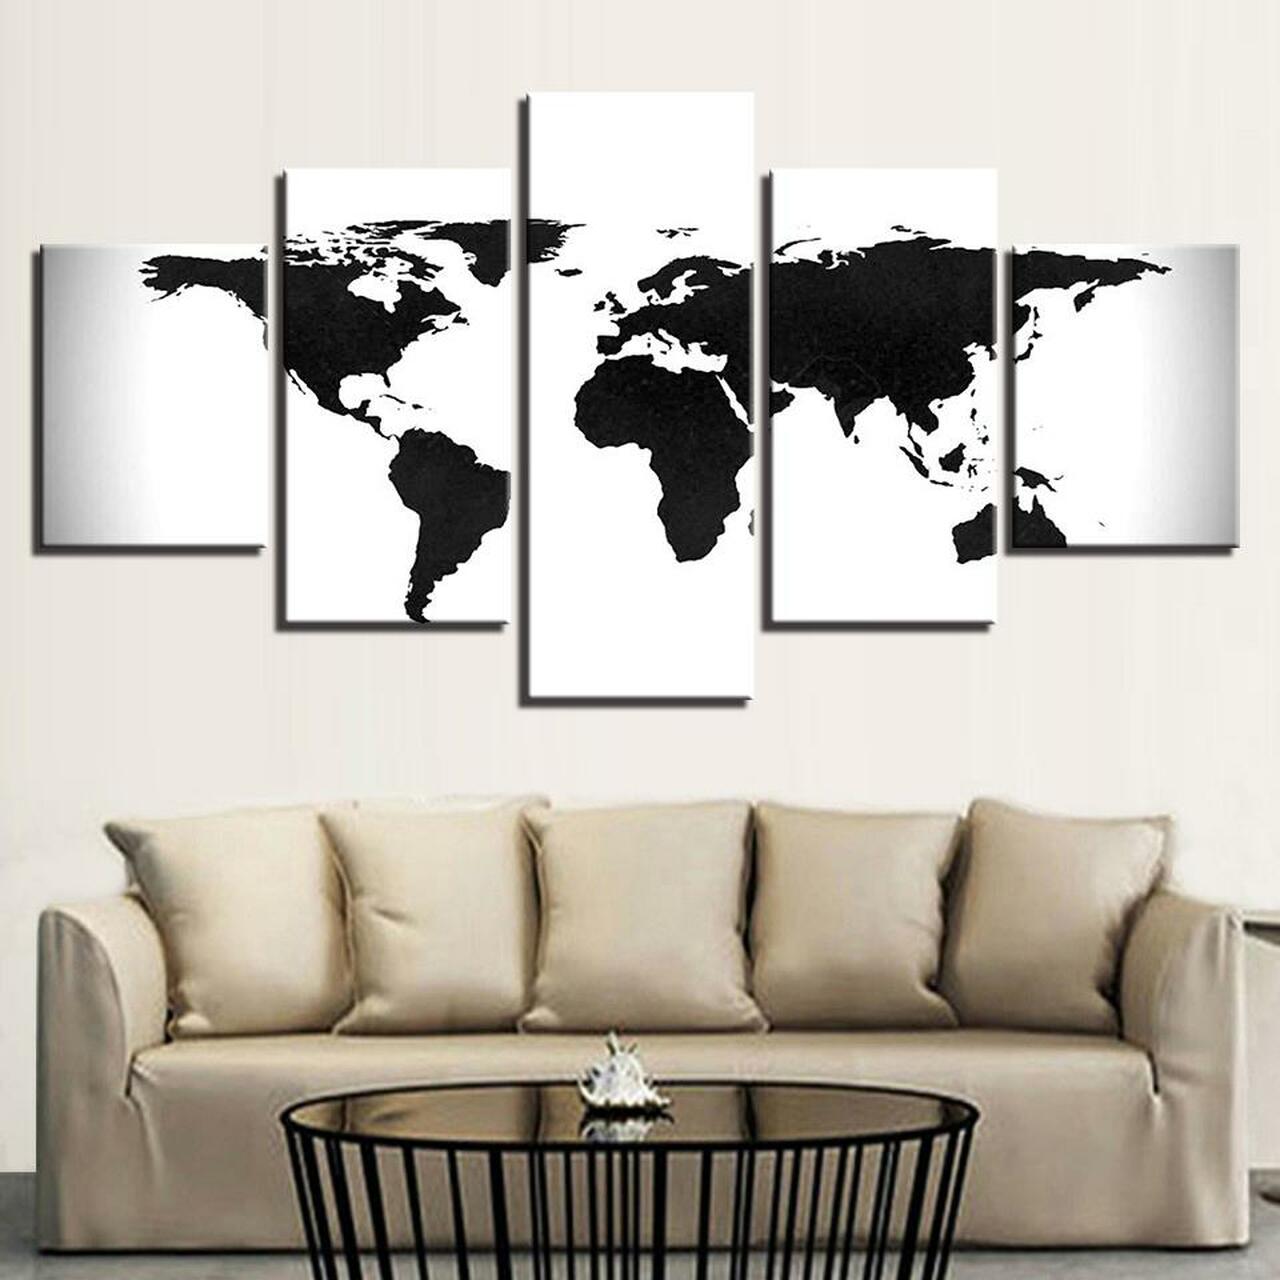 black and white world map 5 pices peinture sur toile impression sur toile toile art pour la dcoration intrieurezwvn8